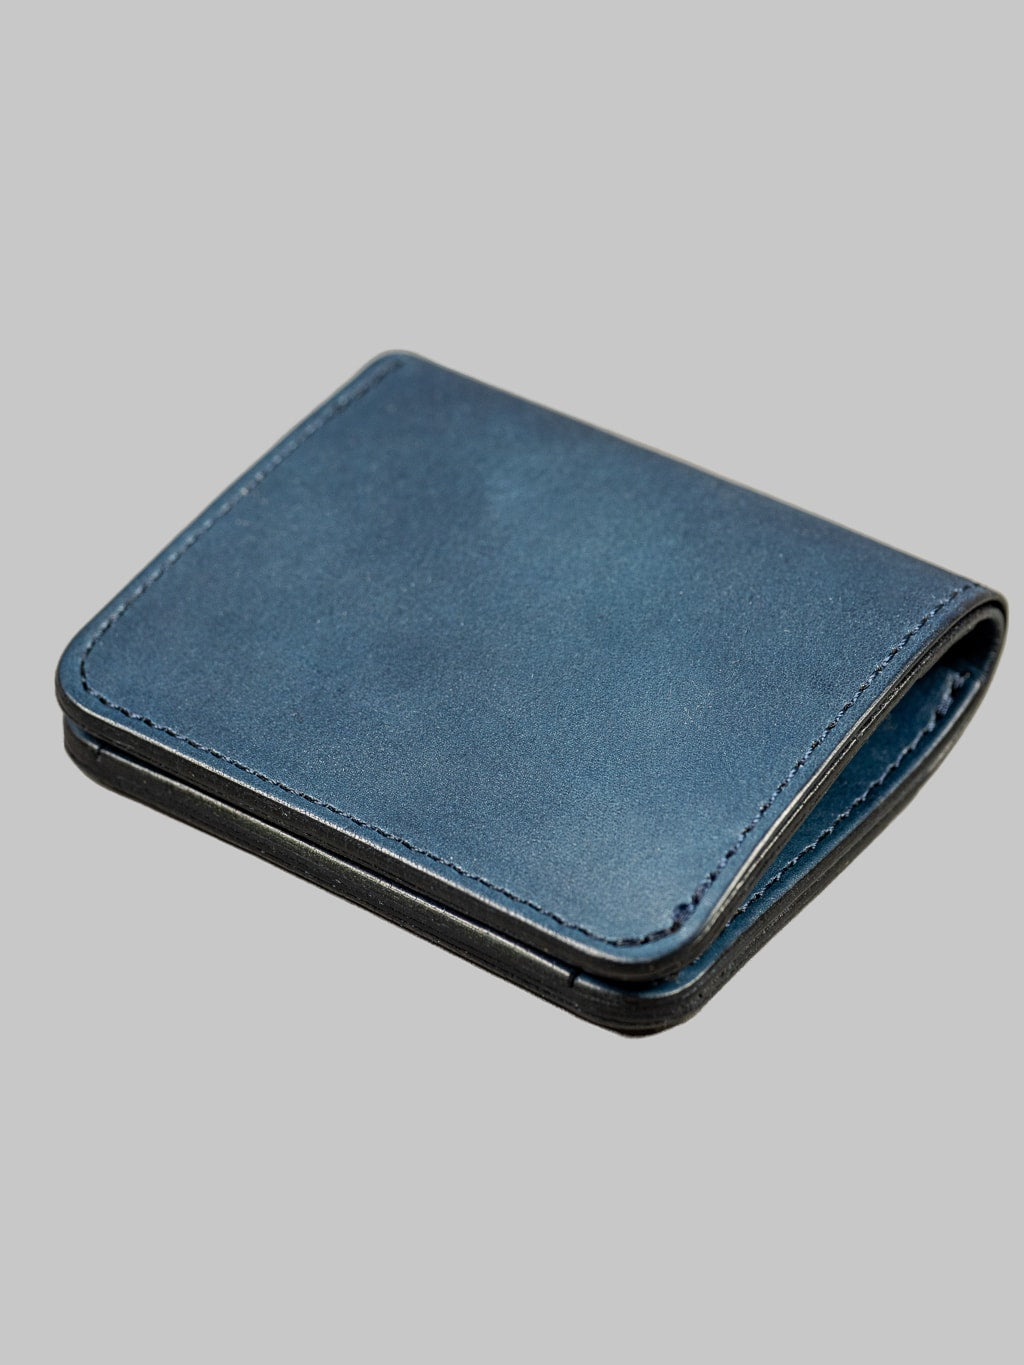 Studio D'artisan Indigo Leather Mini Wallet